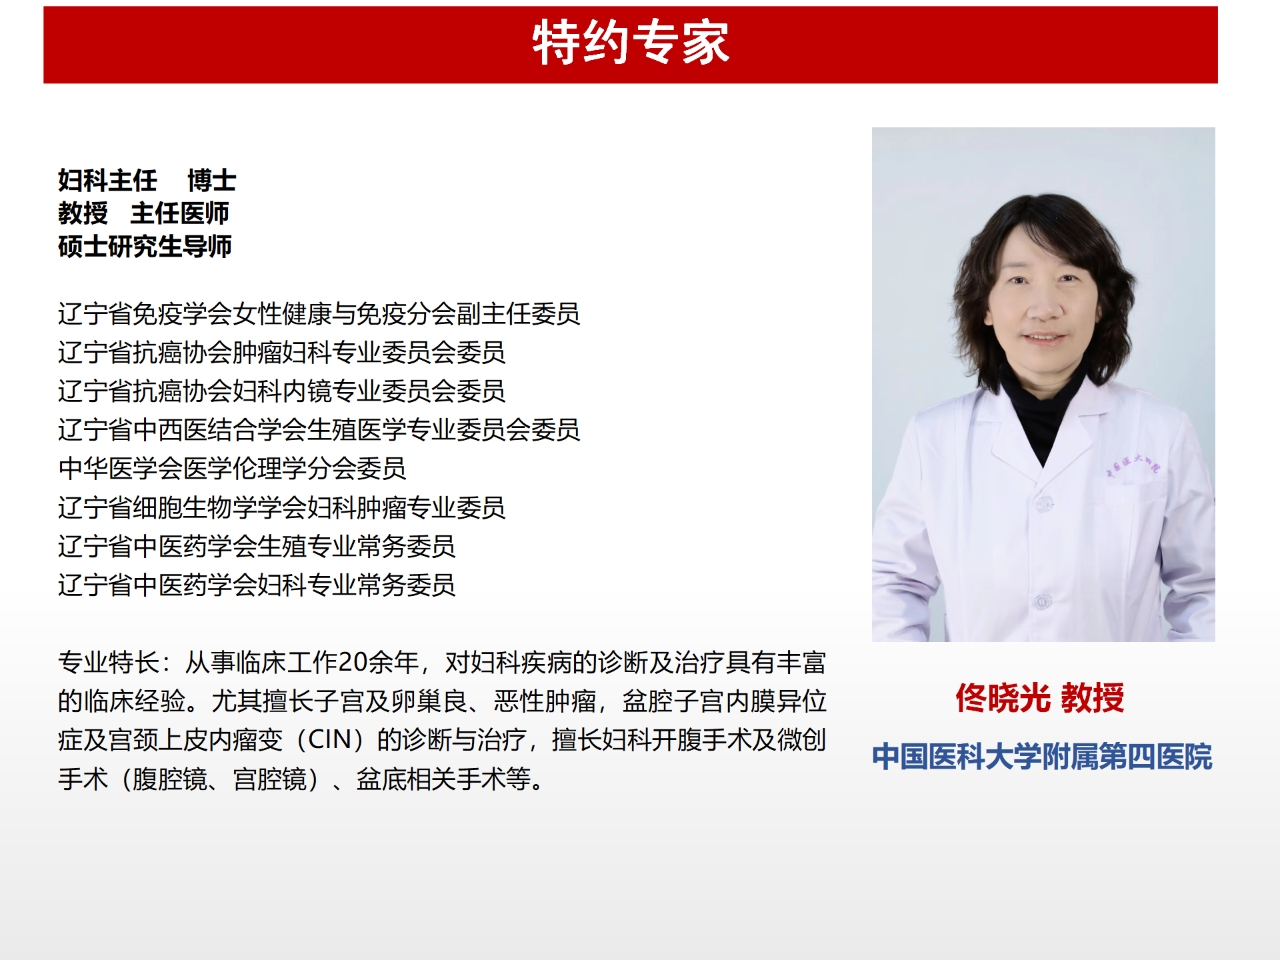 佟晓光教授谈<font color="red">卓越</font>妇科医疗团队的打造